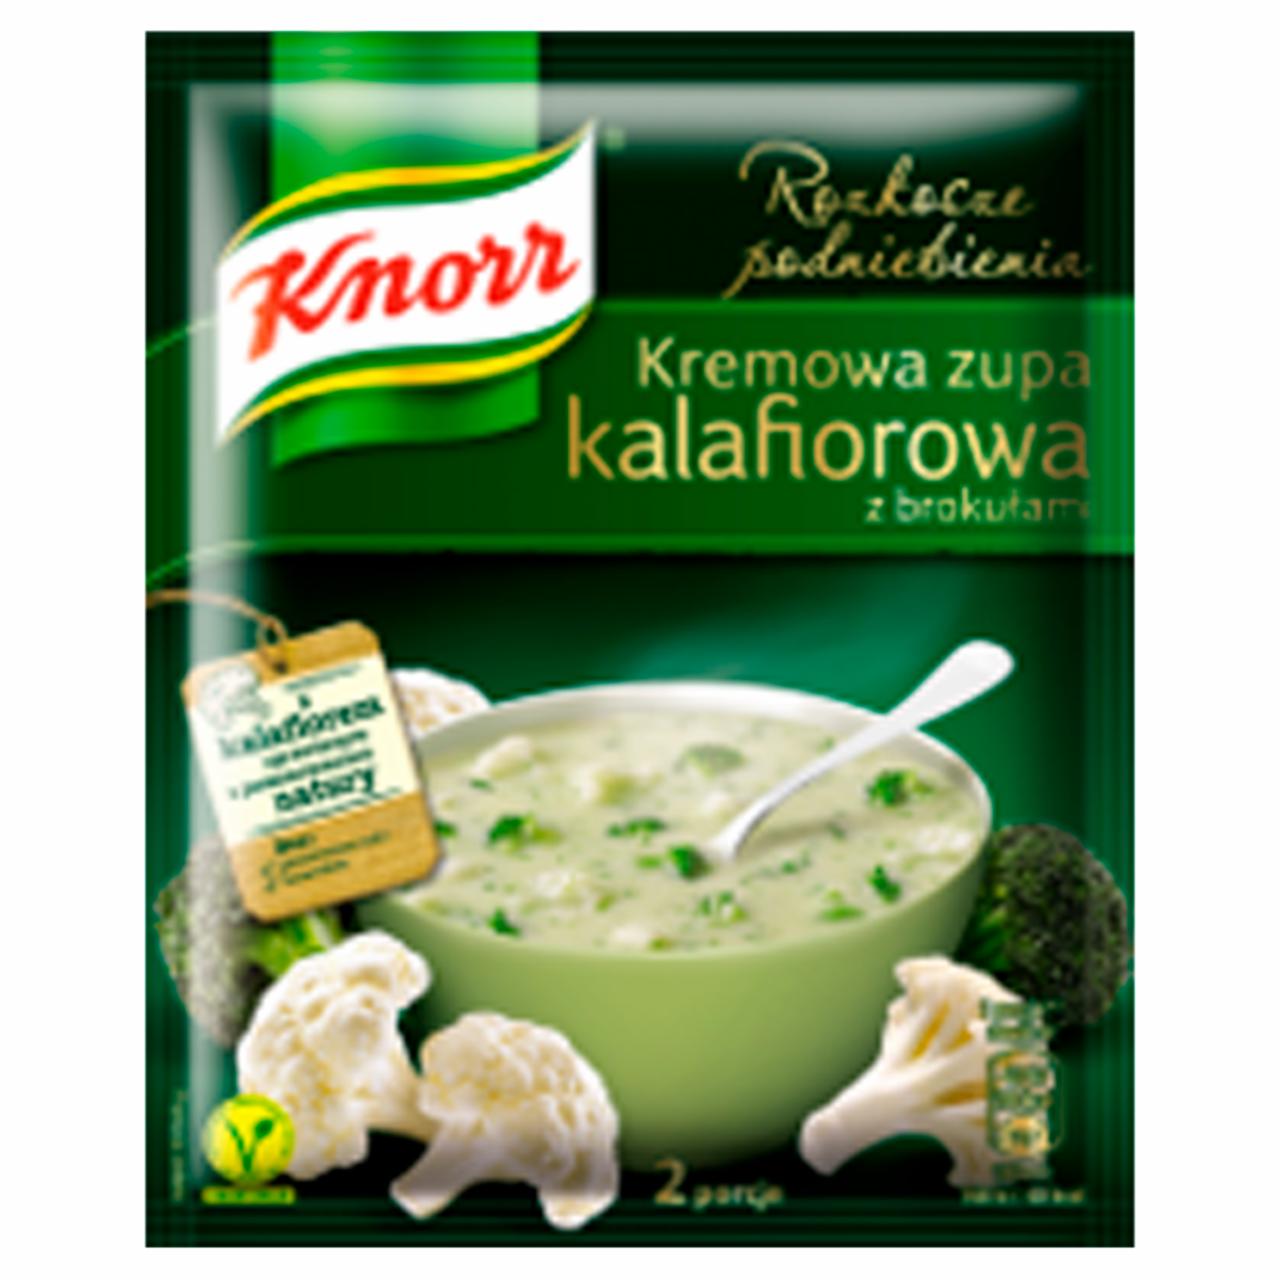 Zdjęcia - Knorr Rozkosze podniebienia Kremowa zupa kalafiorowa z brokułami 48 g